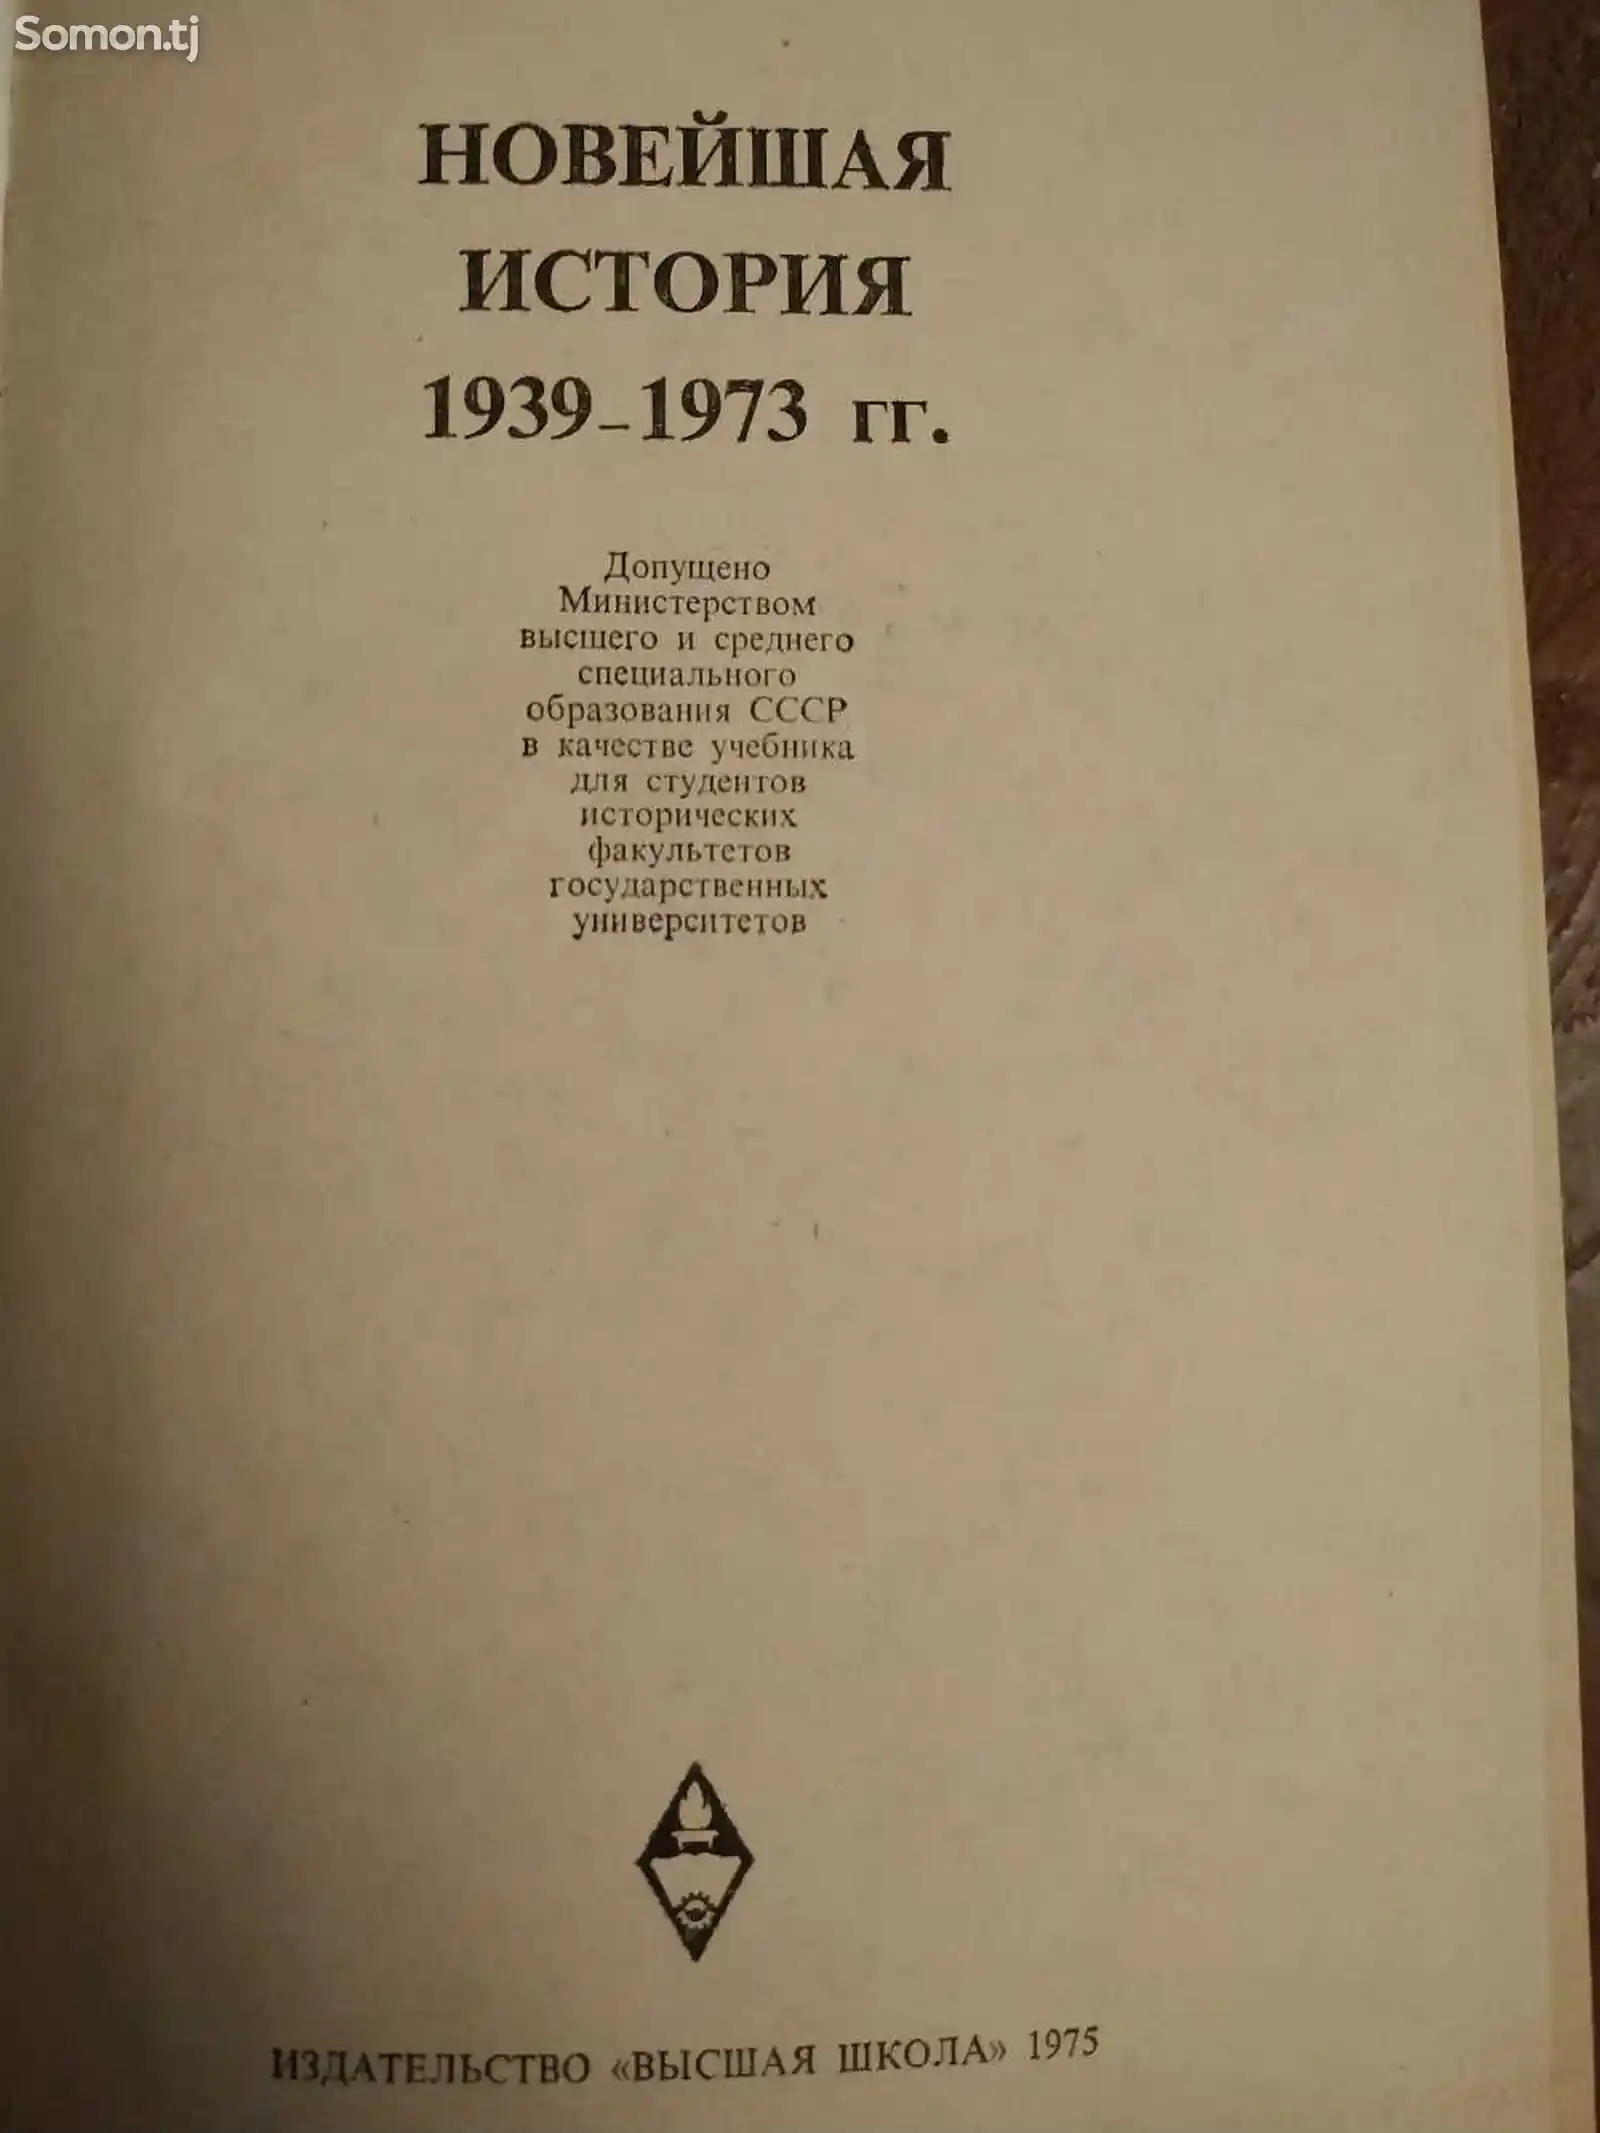 Учебник новейшая история 1939-1973-2